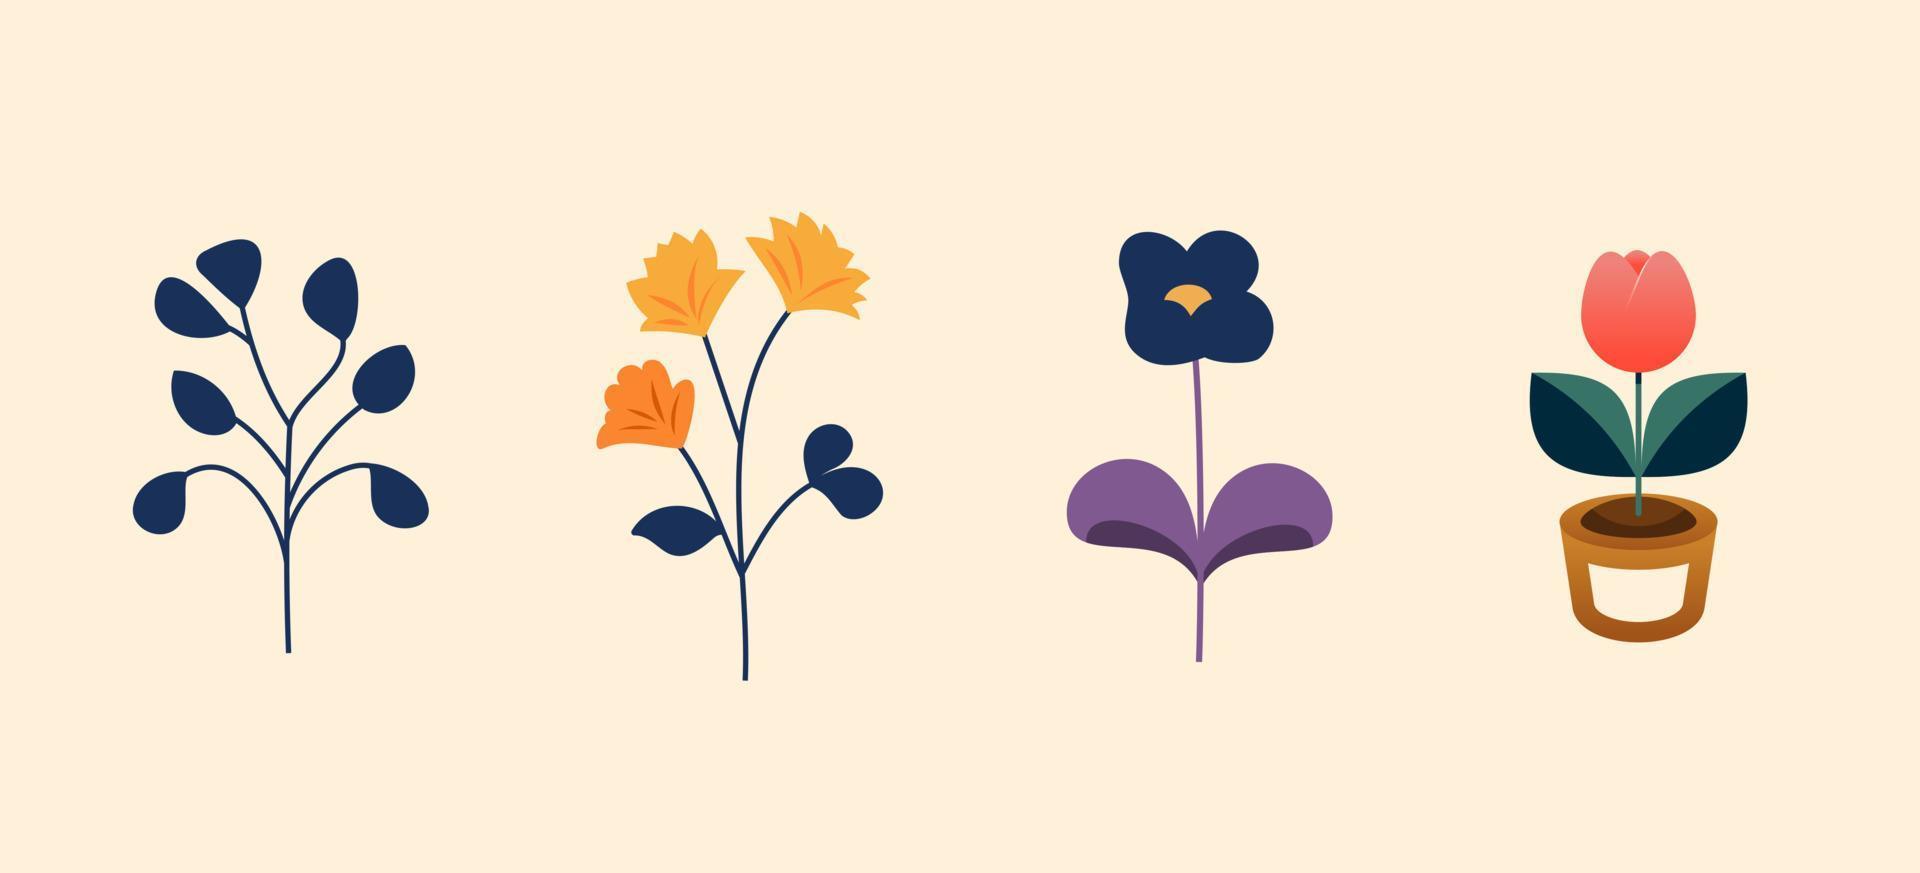 vlak vector romantisch bloem verzameling met rozen, bladeren, bloemen ontwerp elementen. illustratie van natuur bloem voorjaar en zomer in de tuin.